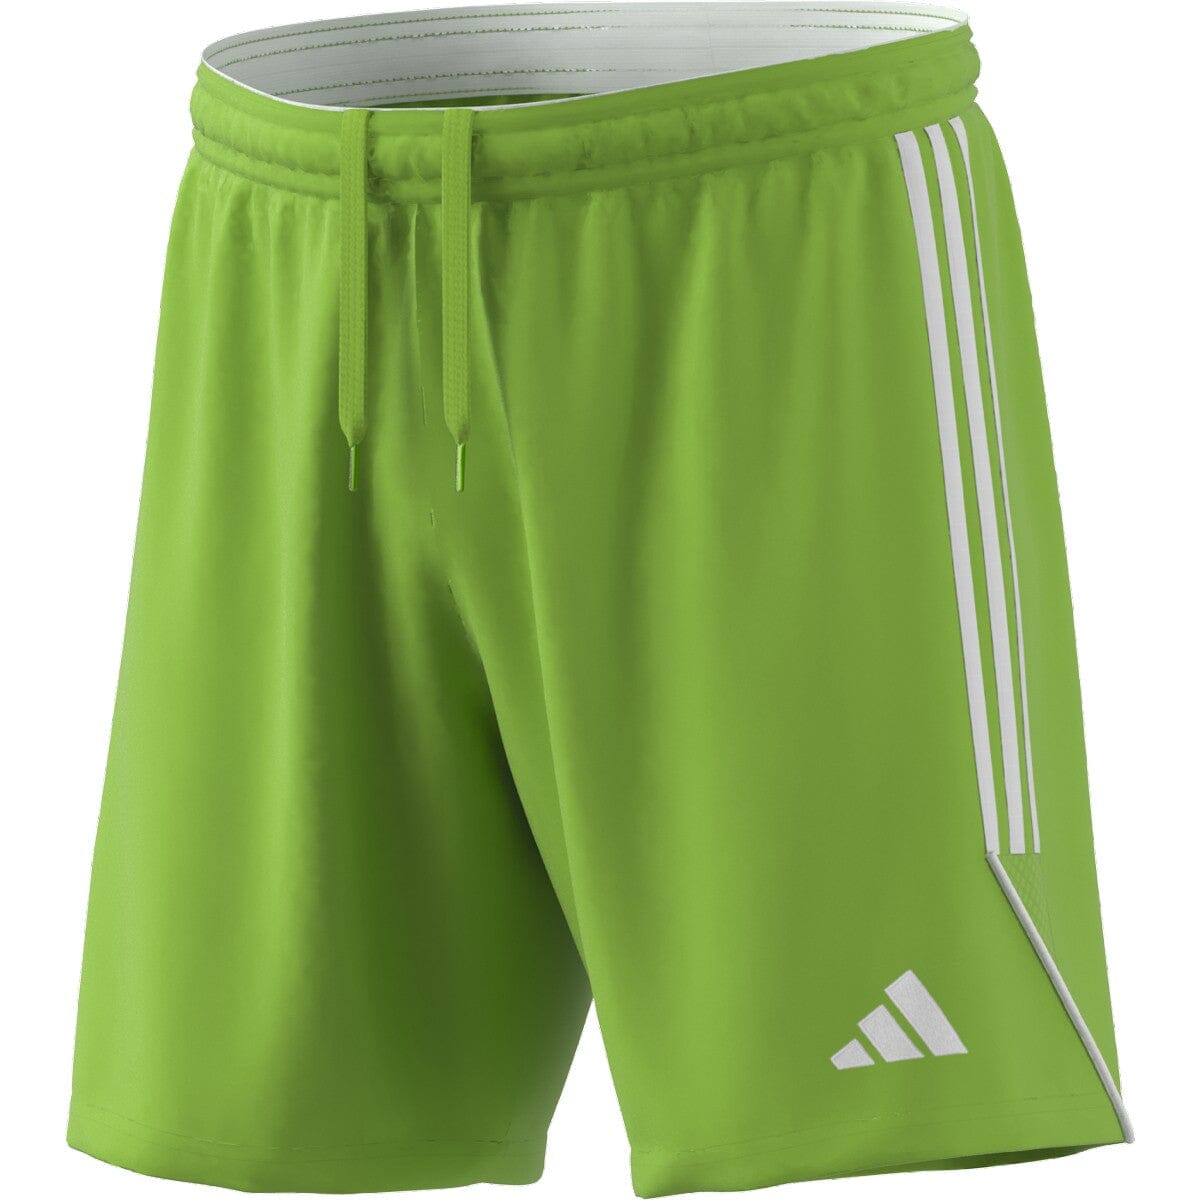 Sodak Soccer Club 23-25 | Goalkeeper Short - Men Short Adidas Adult Small 